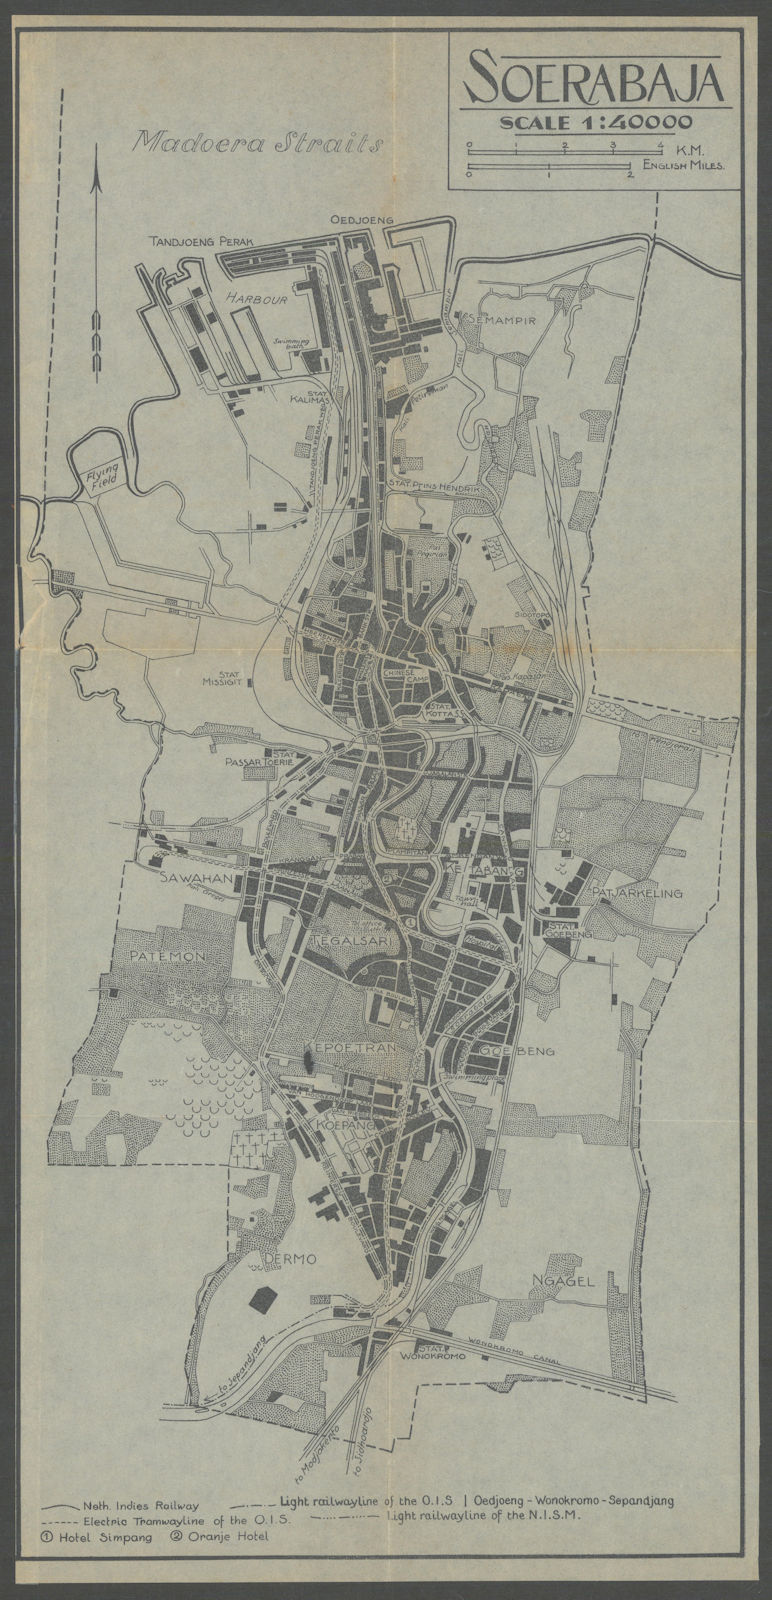 Soerabaya. Surabaya city plan, Java, Indonesia. VAN STOCKUM 1930 old map